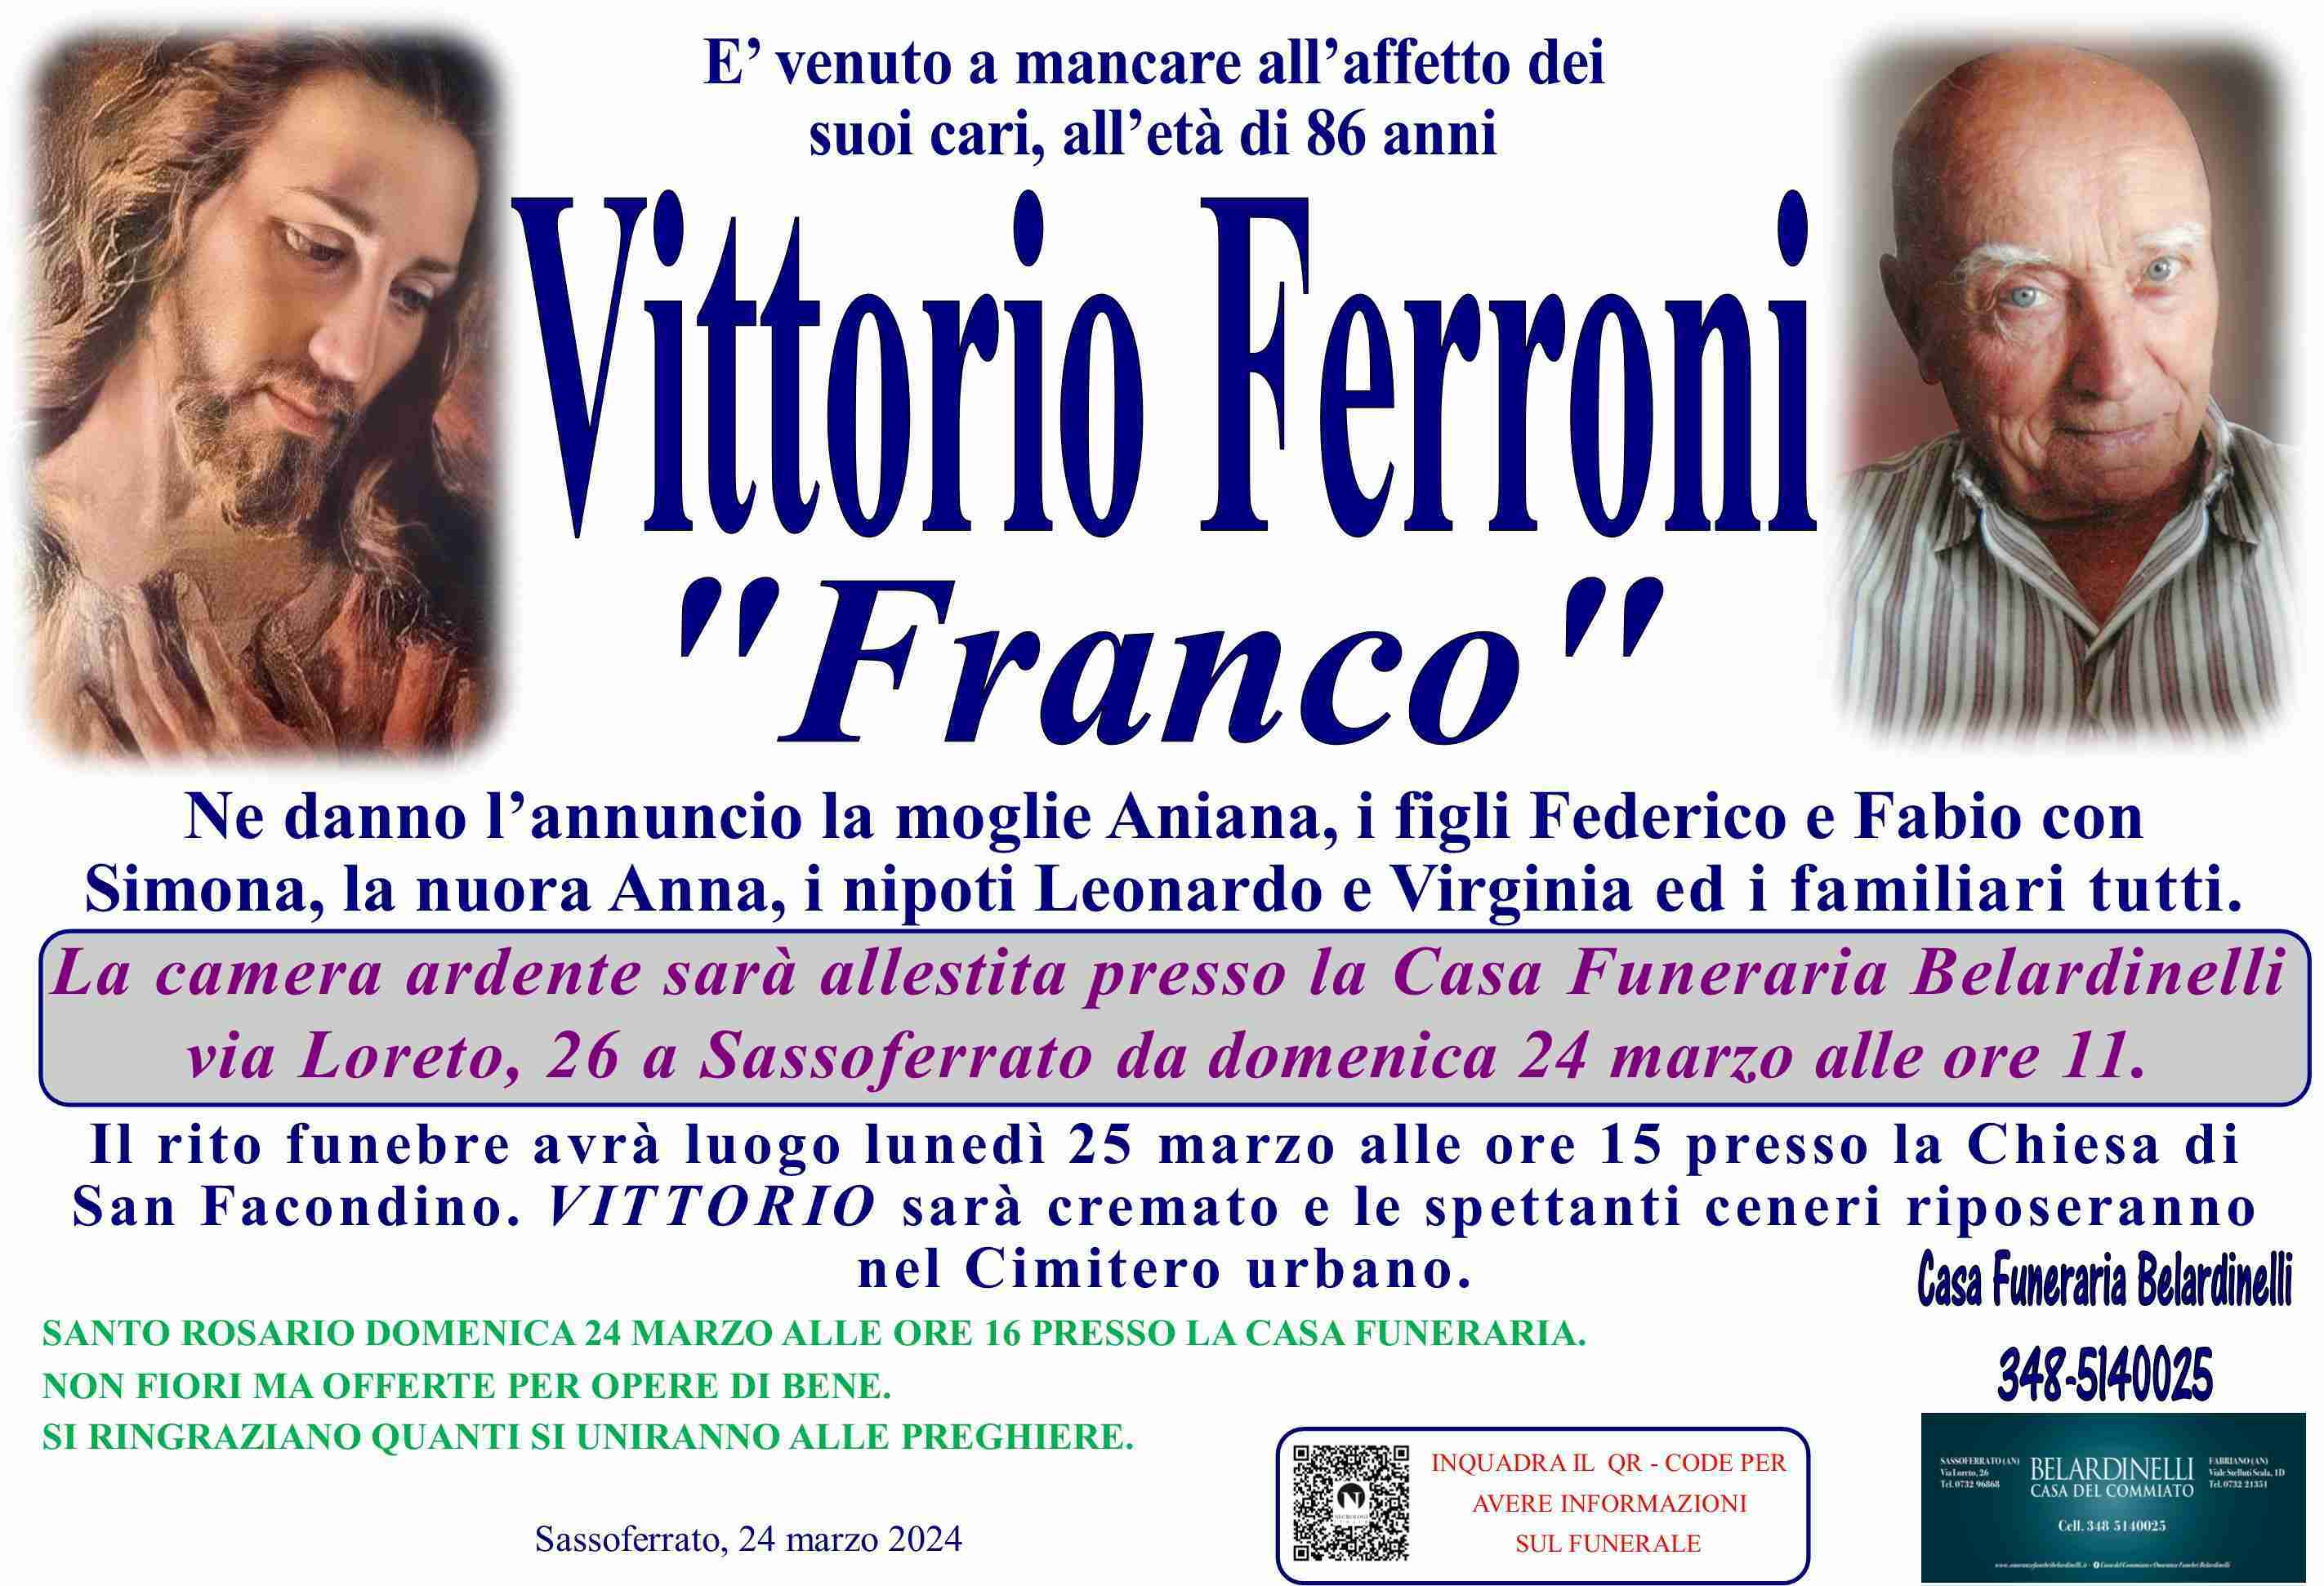 Vittorio Ferroni